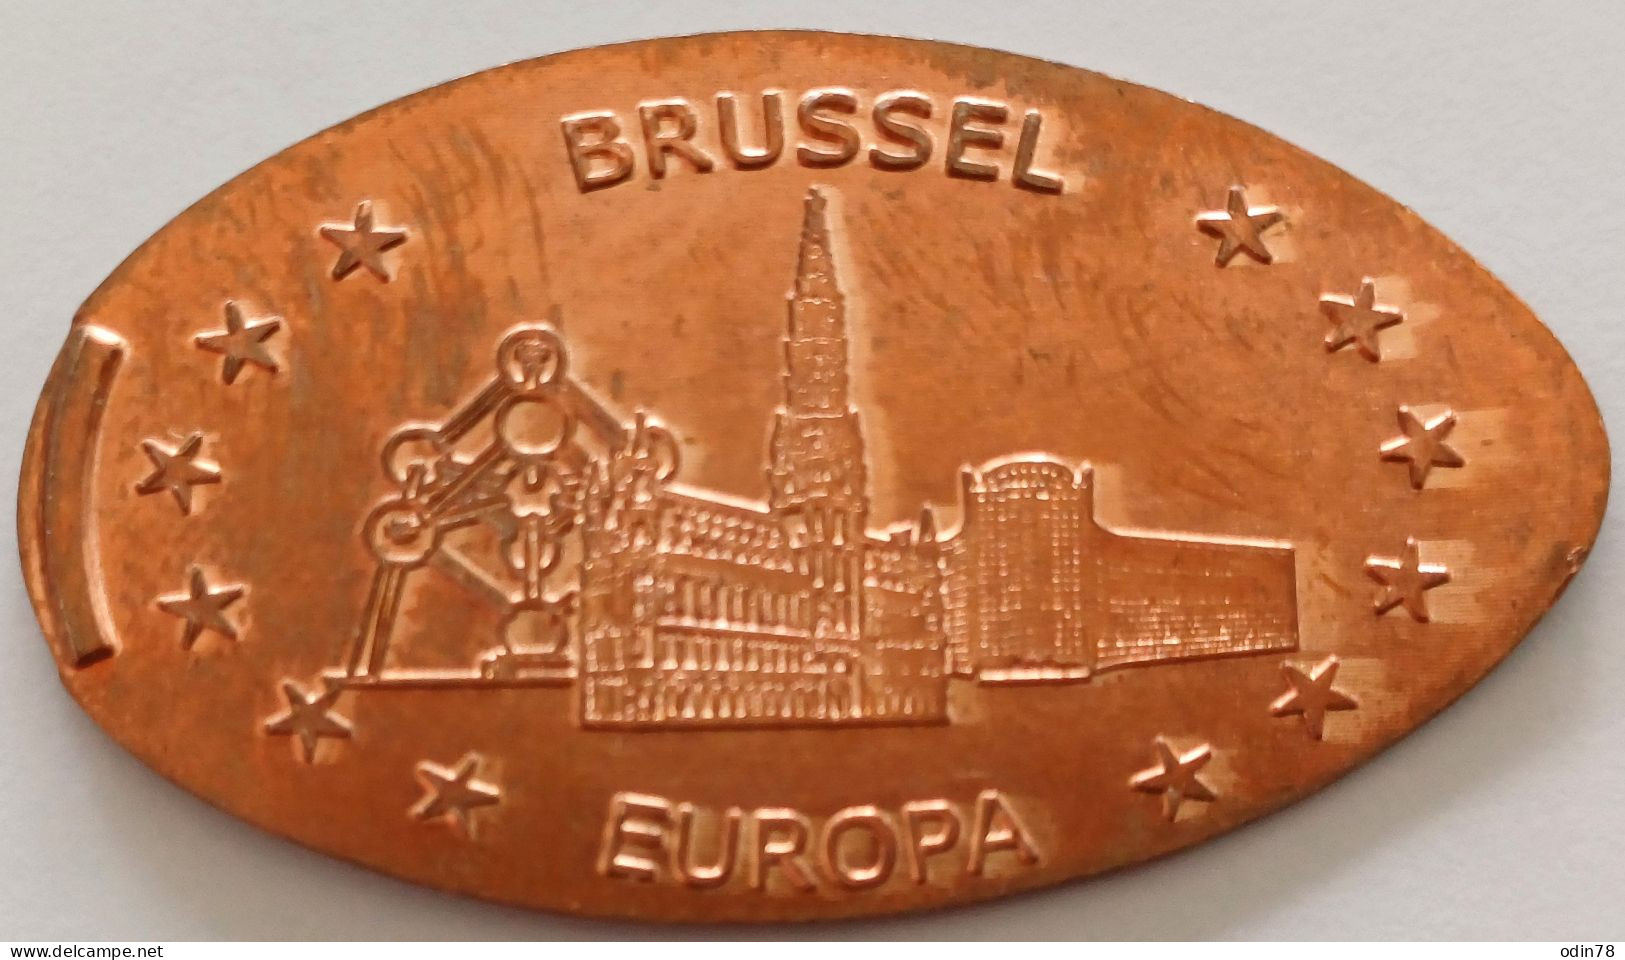 Pièce écrasée -   EUROPA  - BRUSSEL - Pièces écrasées (Elongated Coins)